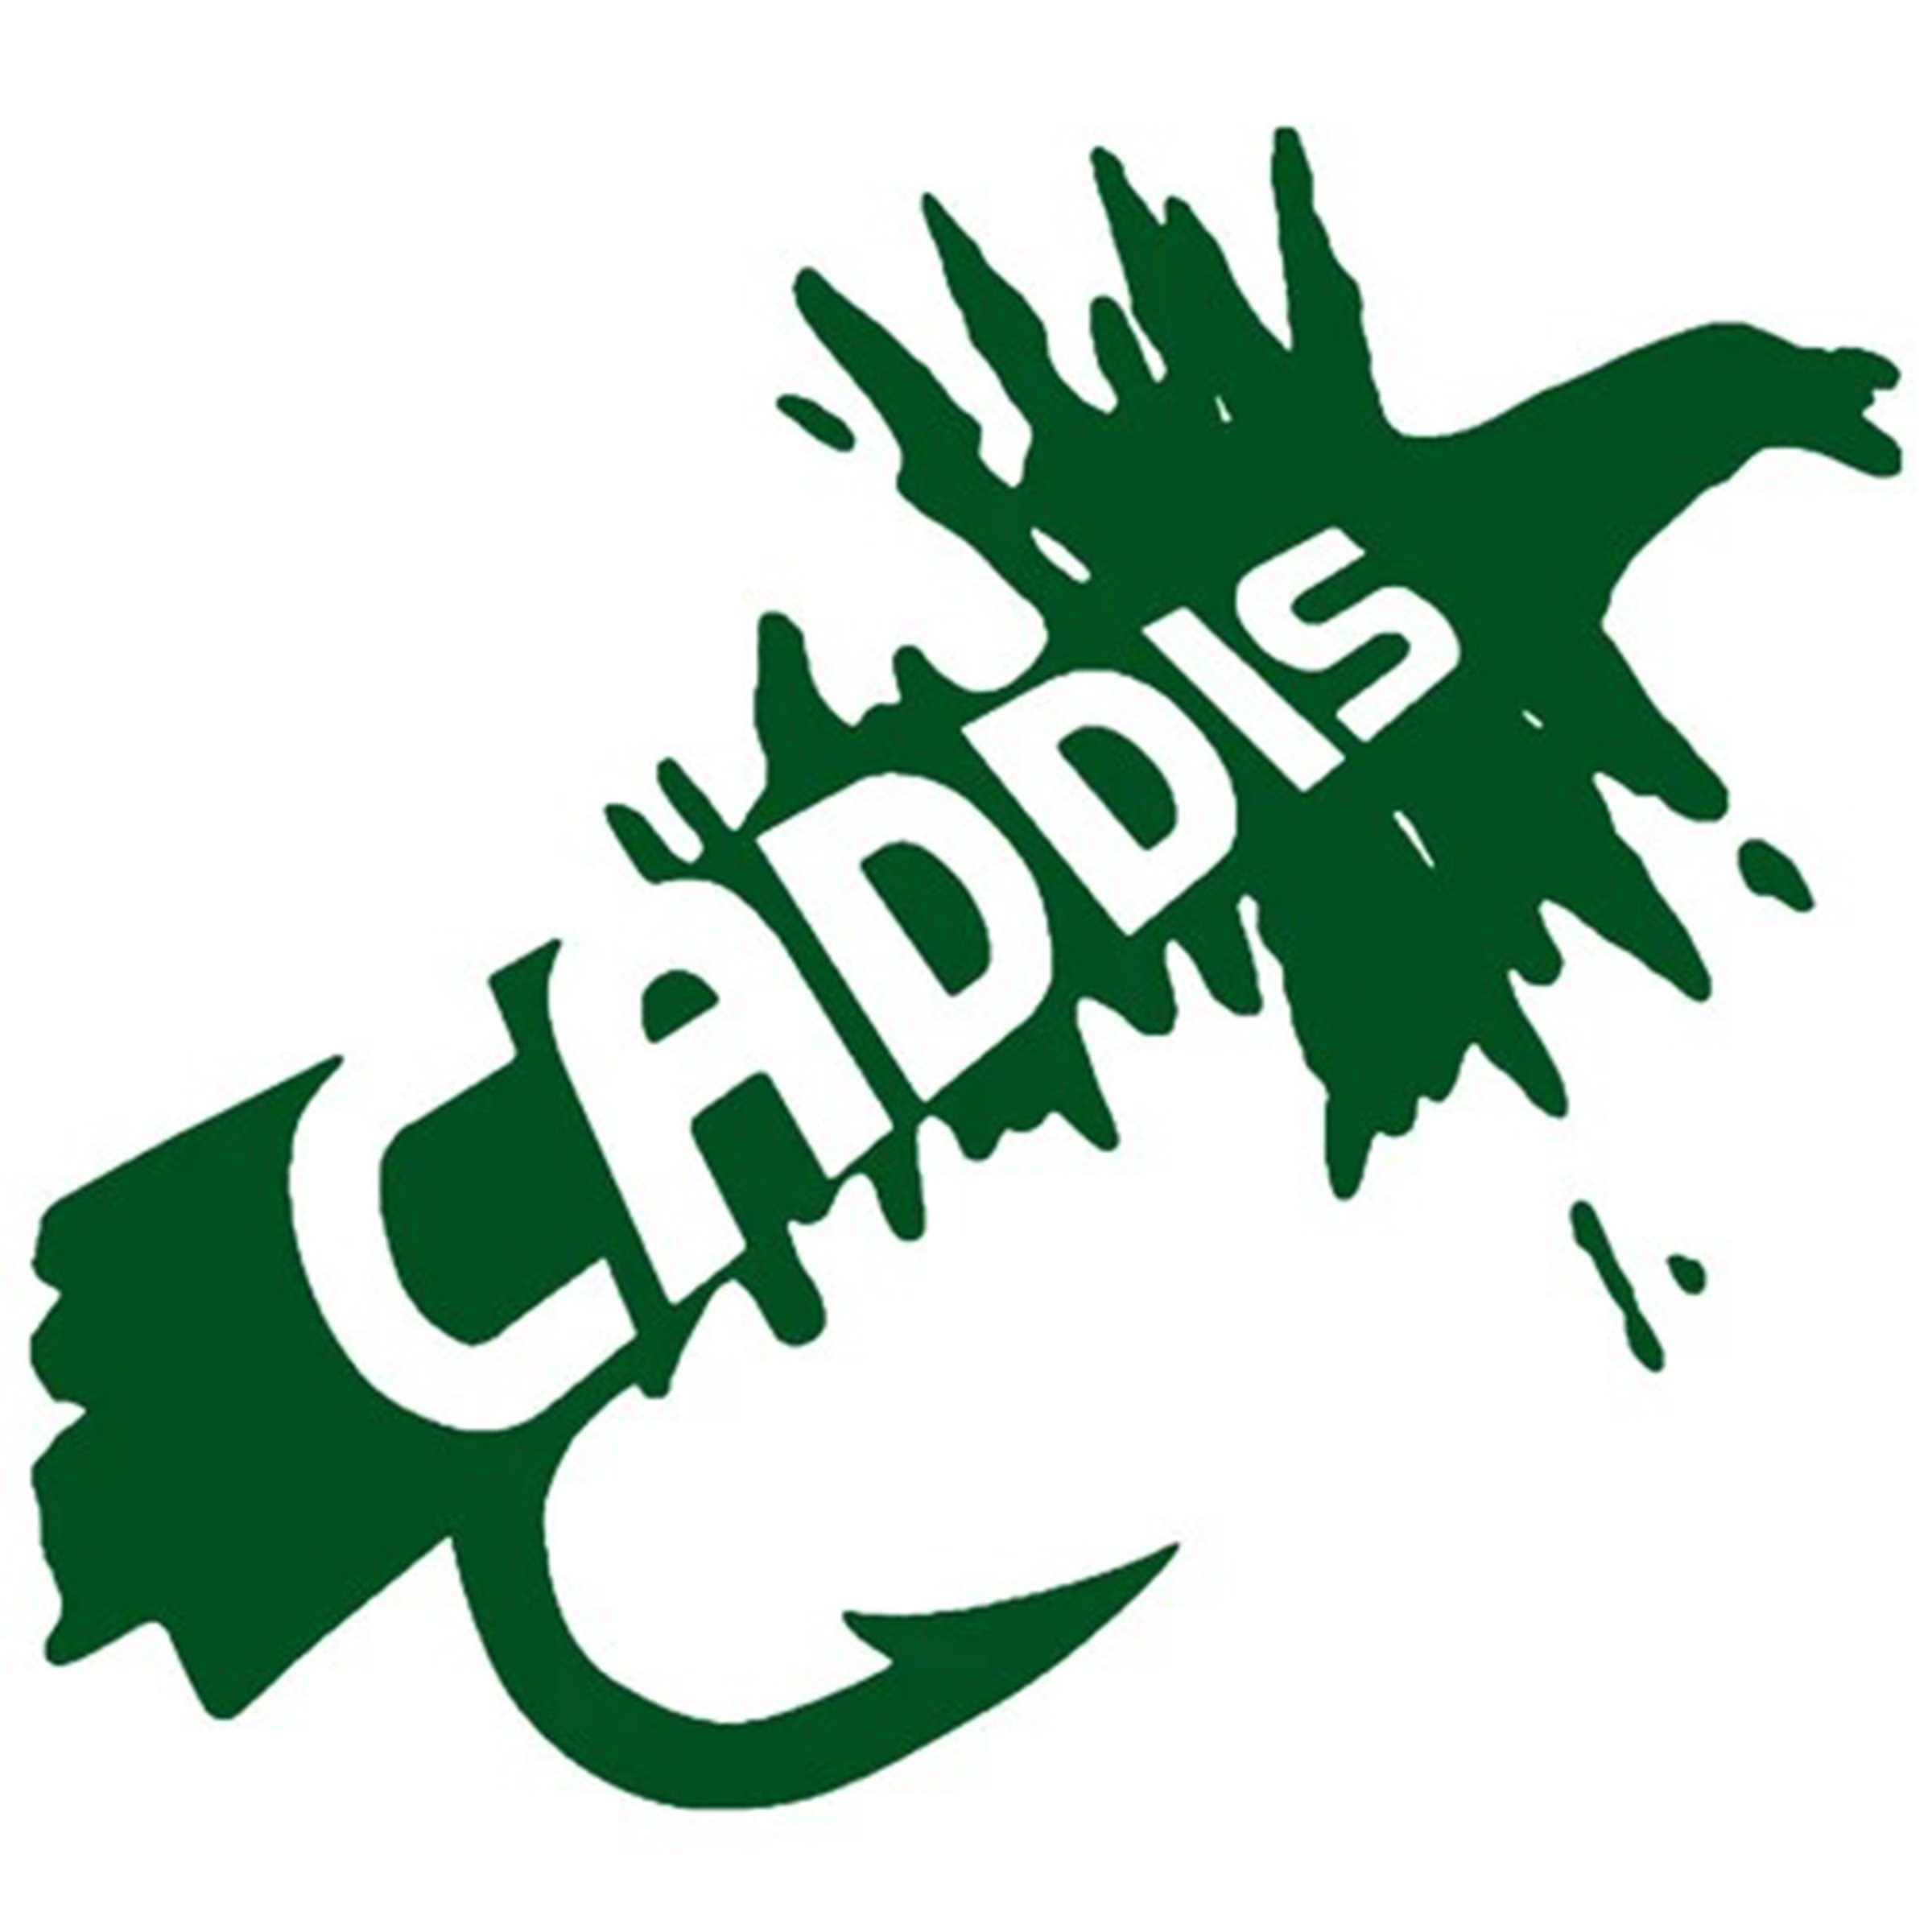 A_caddis